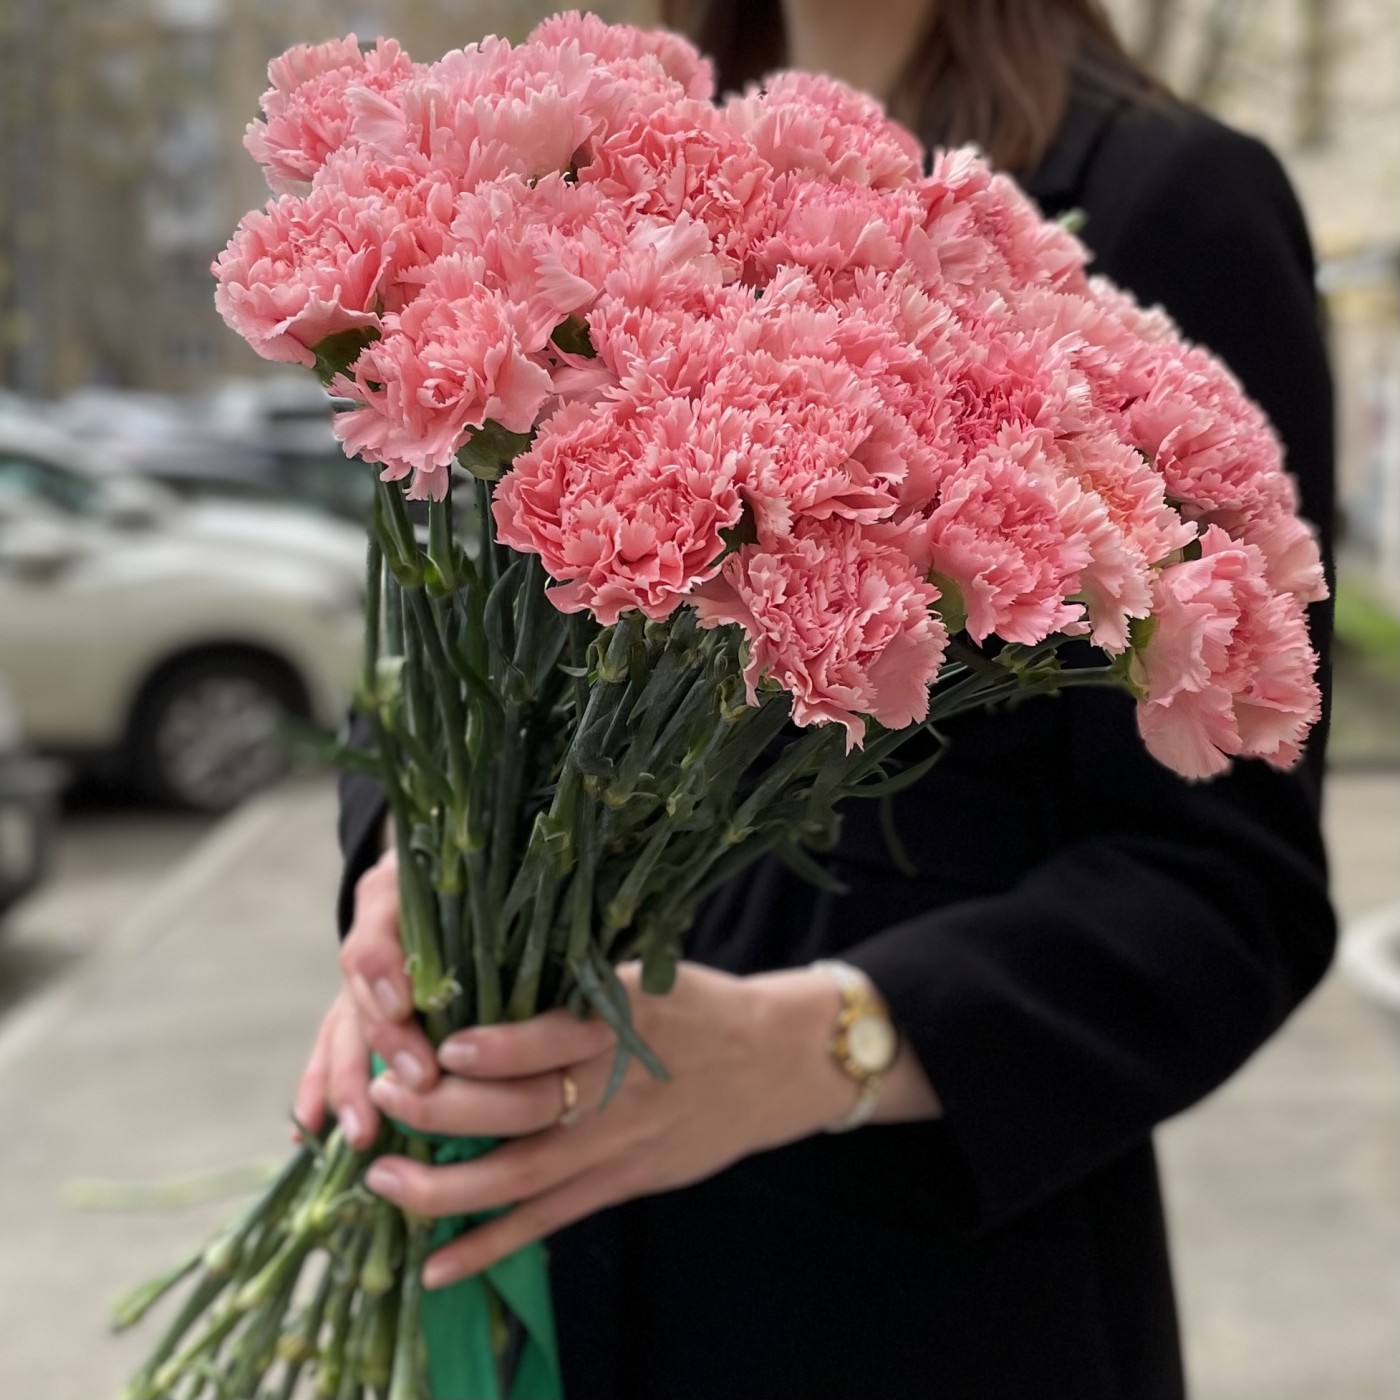 Купить гвоздики с доставкой по москве купить домашние цветы на авито в москве